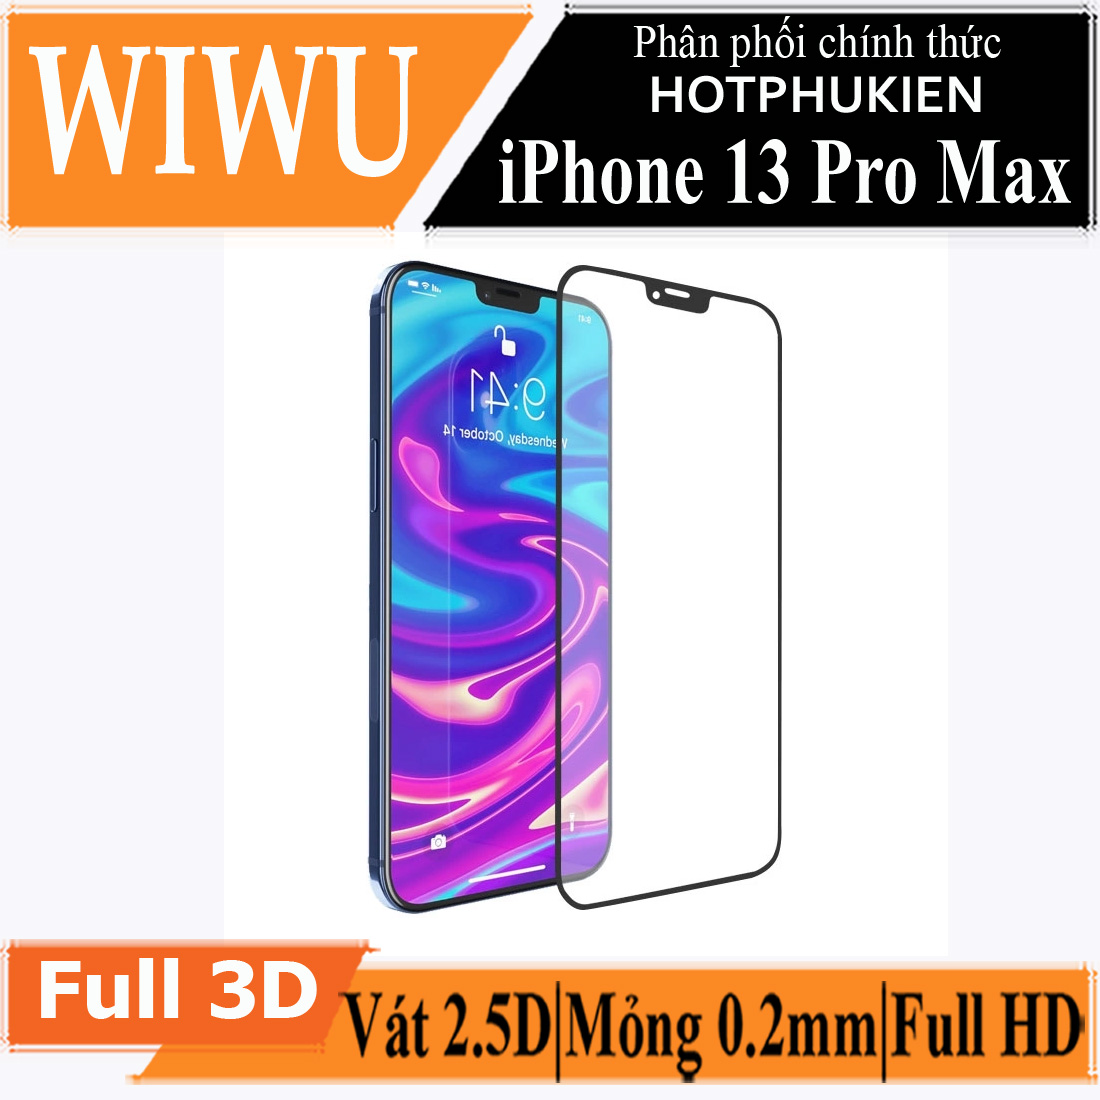 Miếng dán kính cường lực Cho iPhone 13 Pro Max hiệu WIWU iVista